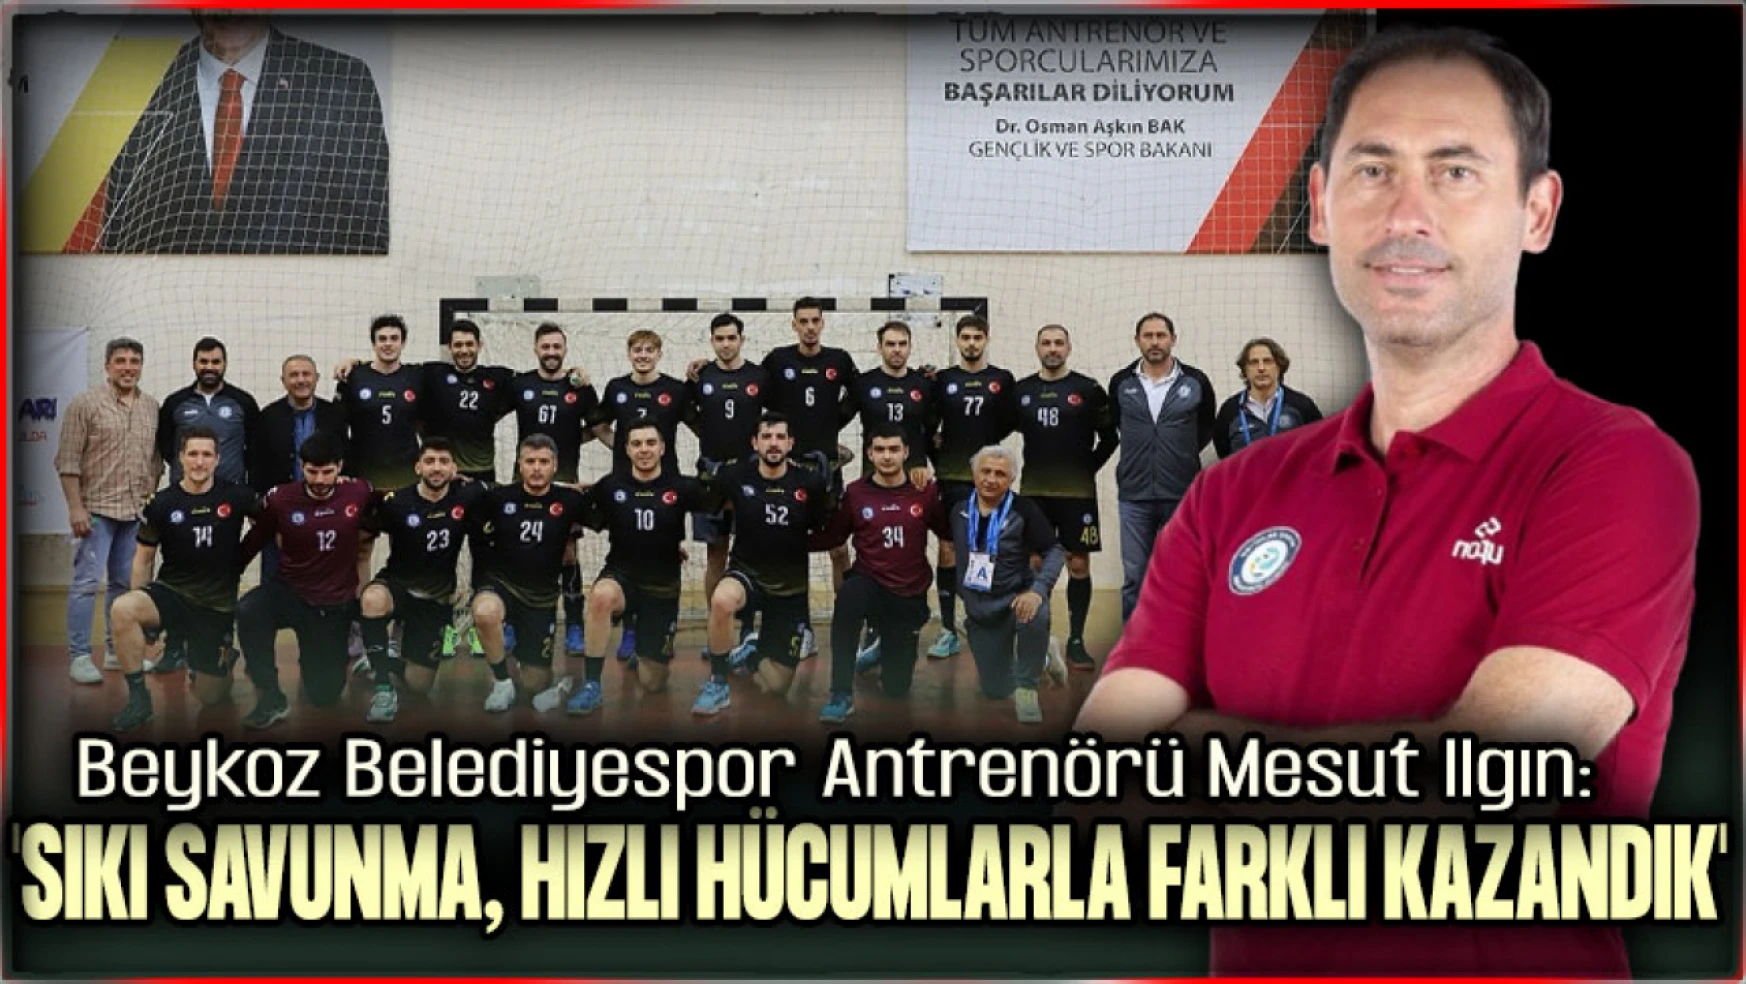 Beykoz Belediyespor Antrenörü Mesut Ilgın'dan Nilüfer Belediyespor Galibiyeti Değerlendirmesi